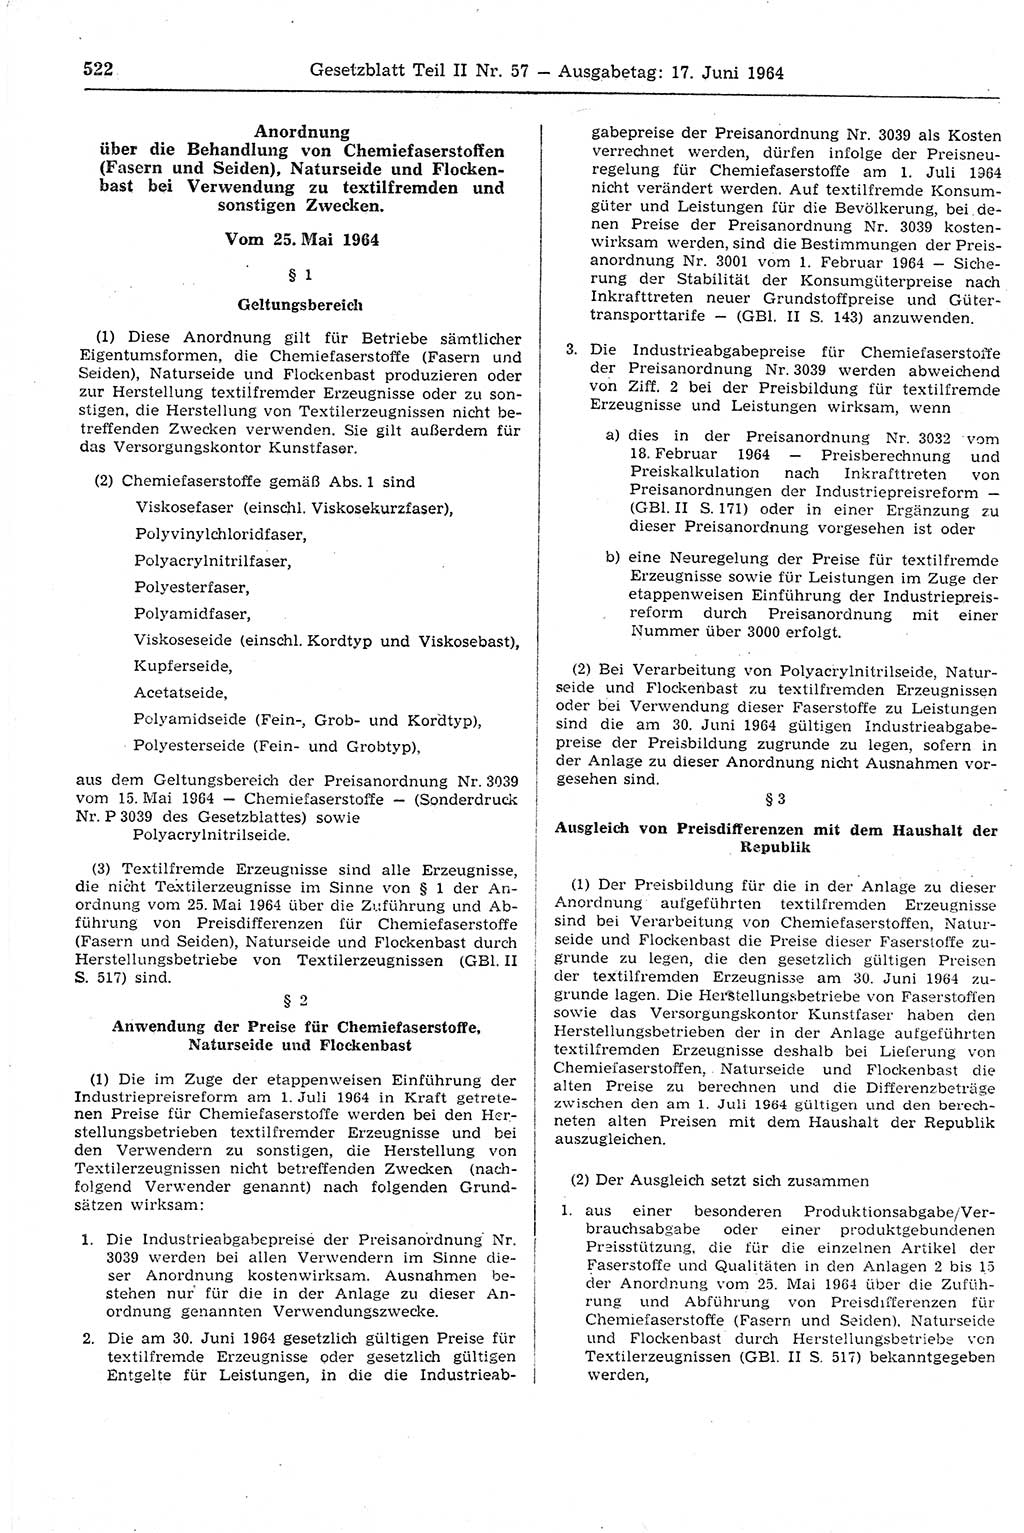 Gesetzblatt (GBl.) der Deutschen Demokratischen Republik (DDR) Teil ⅠⅠ 1964, Seite 522 (GBl. DDR ⅠⅠ 1964, S. 522)